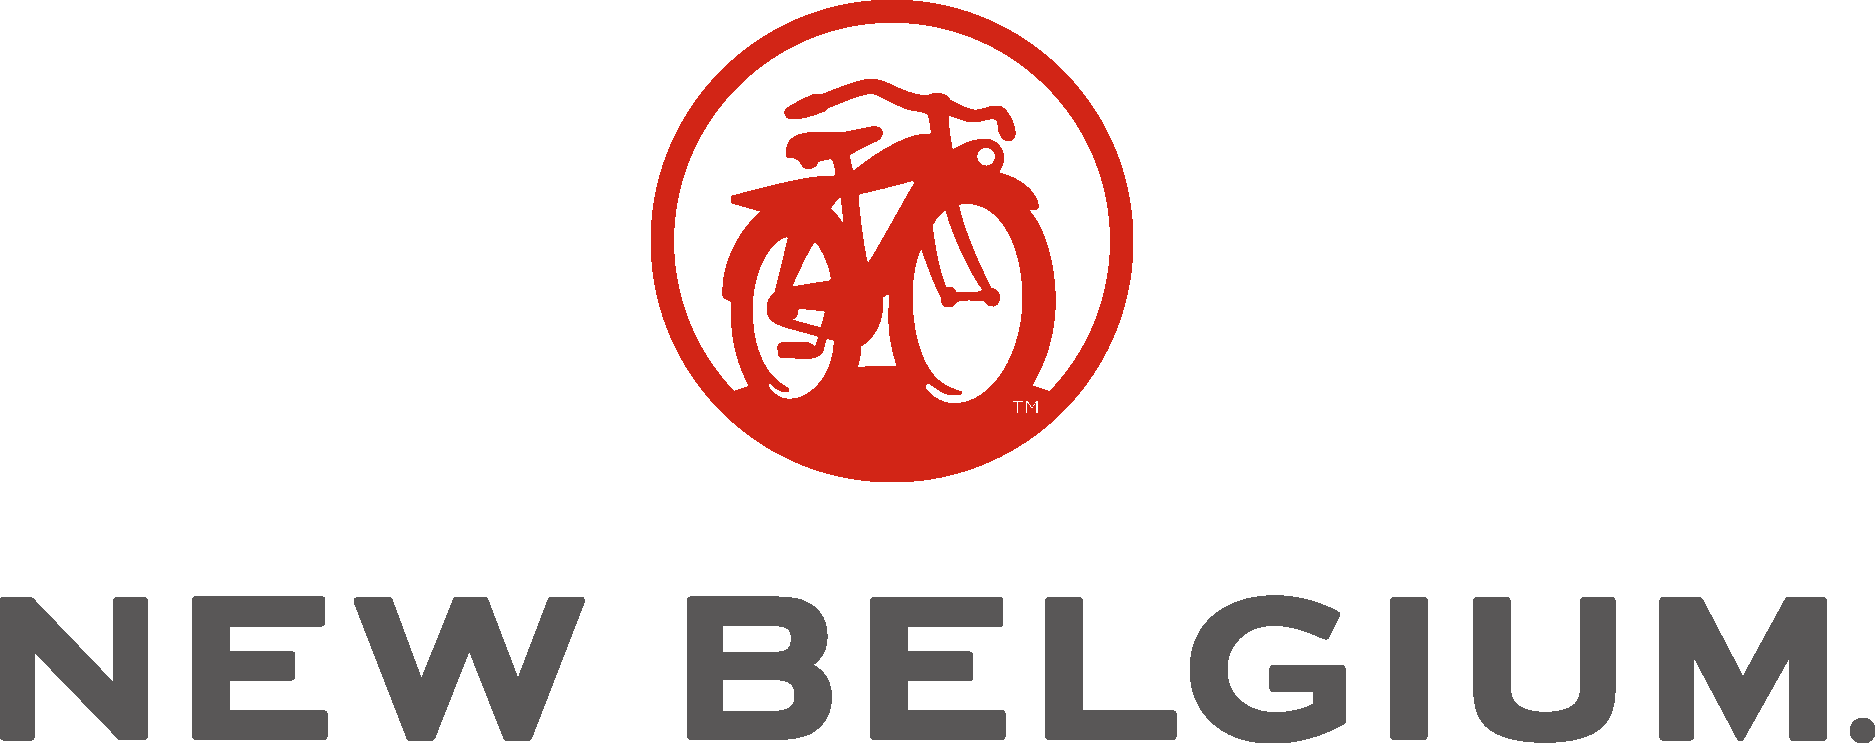 Download Scarlet Belgium Logo in SVG Vector or PNG File Format 